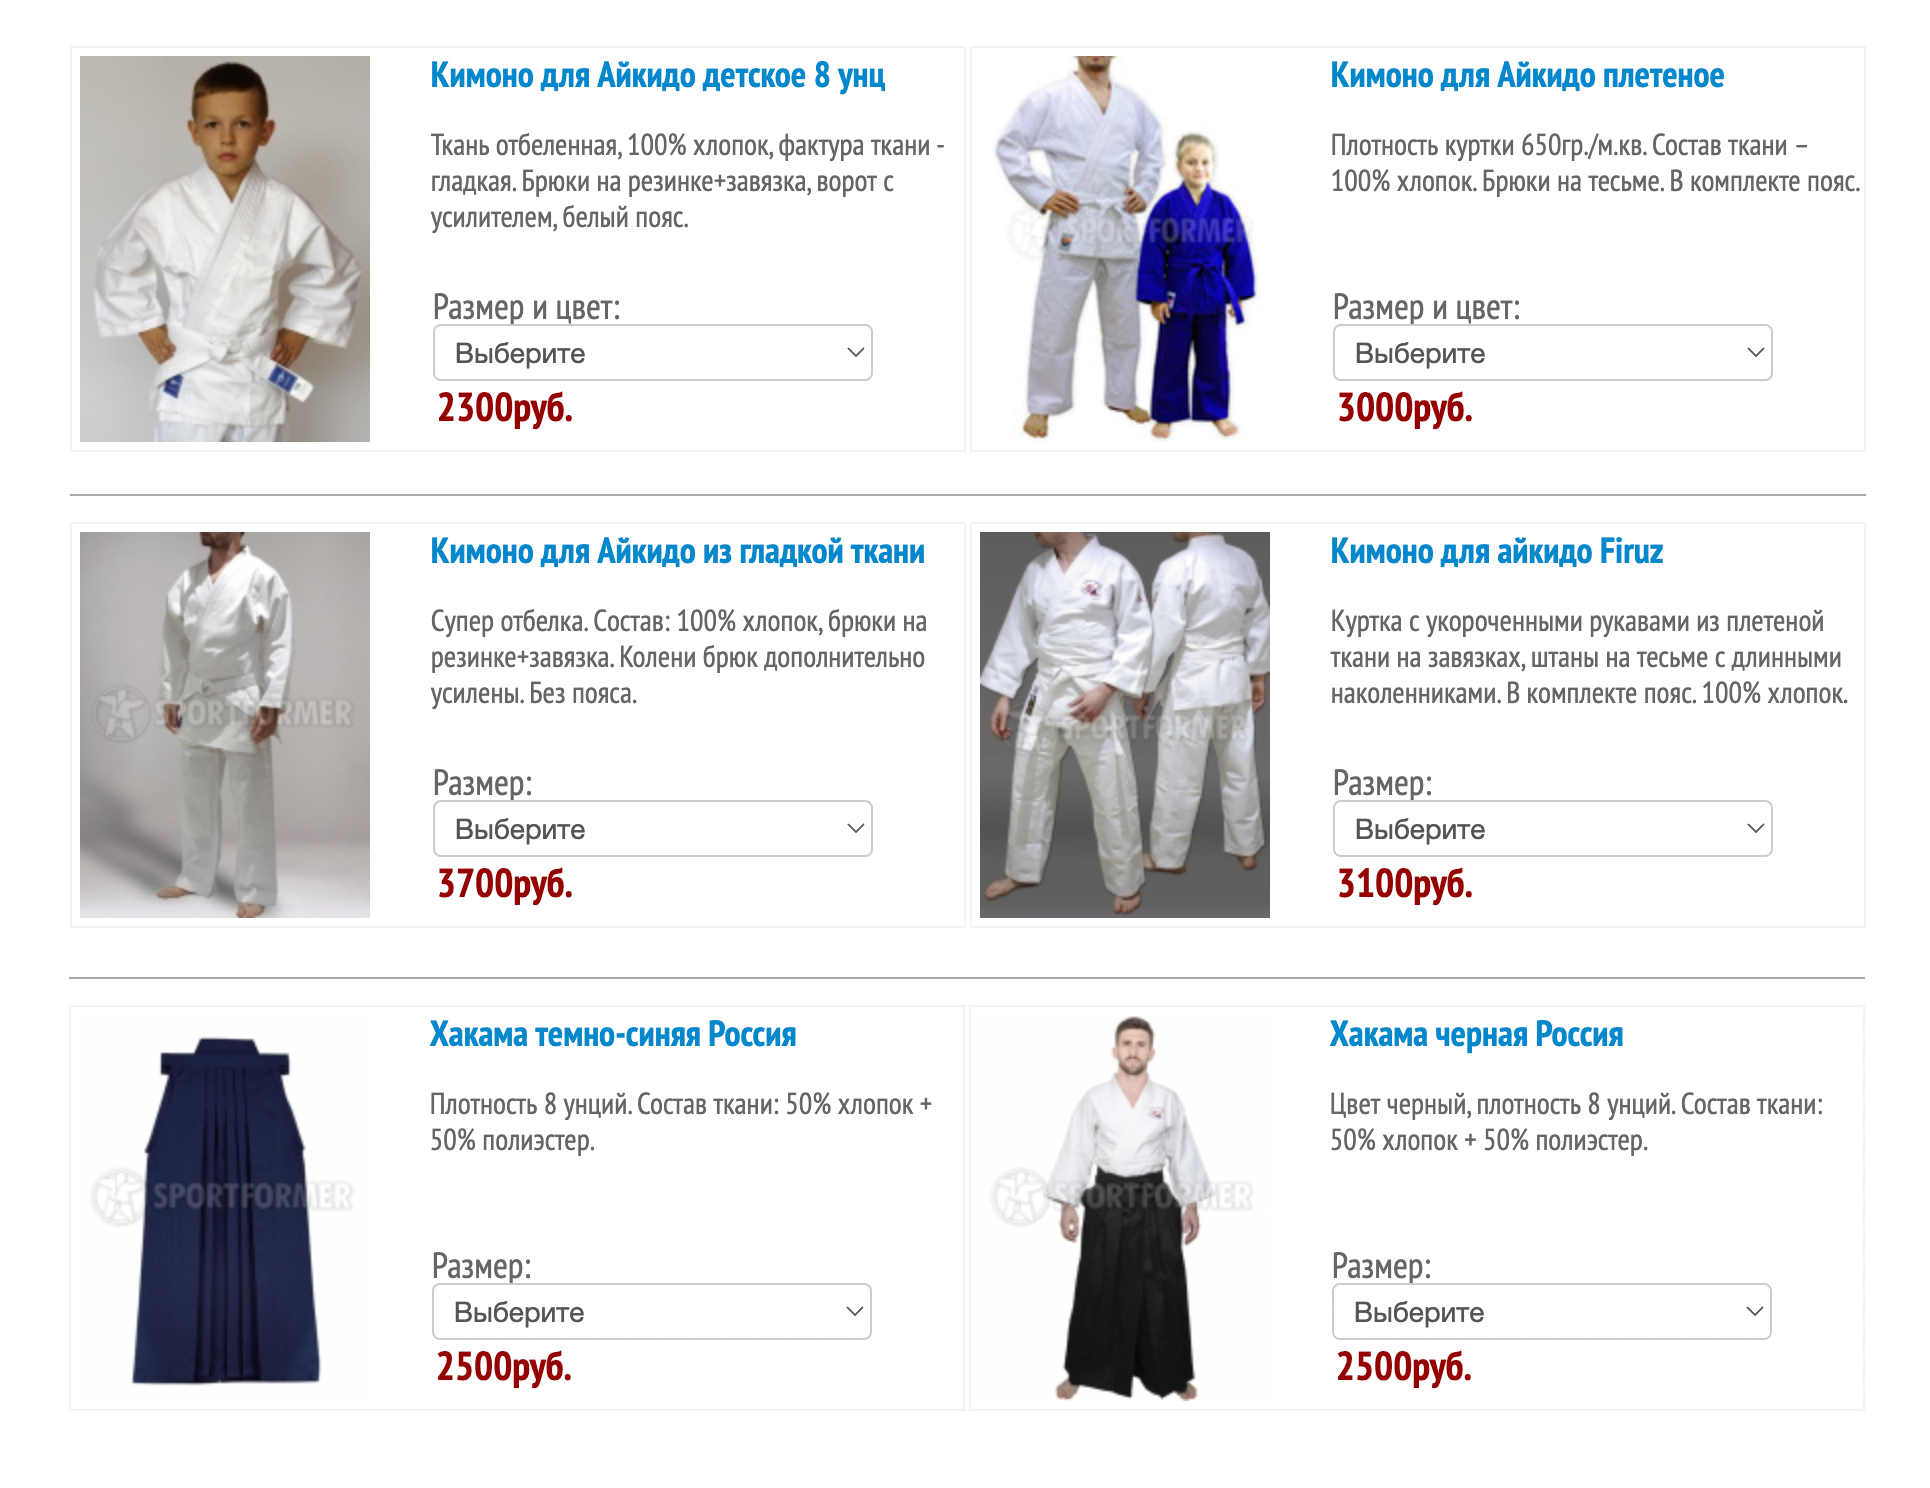 Обычно в магазинах не очень большой выбор кимоно, так как все они стандартные и различаются, как правило, только плотностью ткани. Источник: sportformer.ru